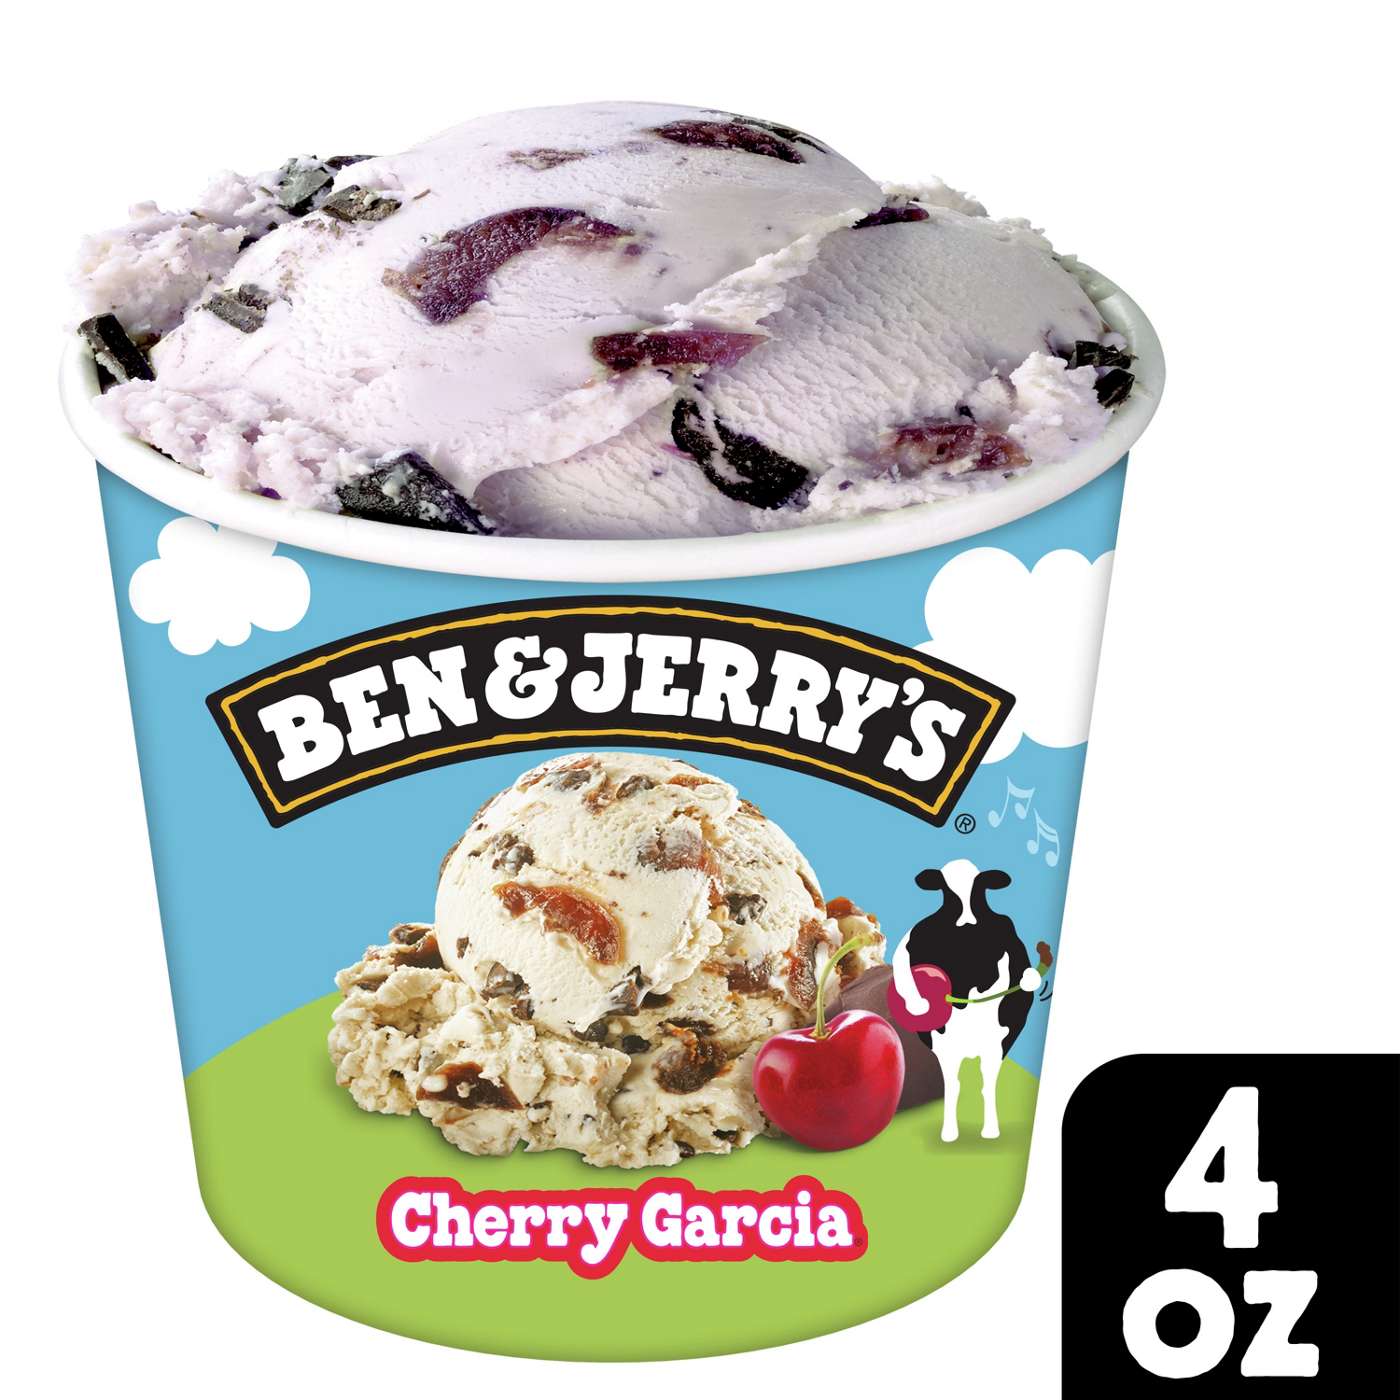 Ben & Jerry's Cherry Garcia Ice Cream; image 5 of 7